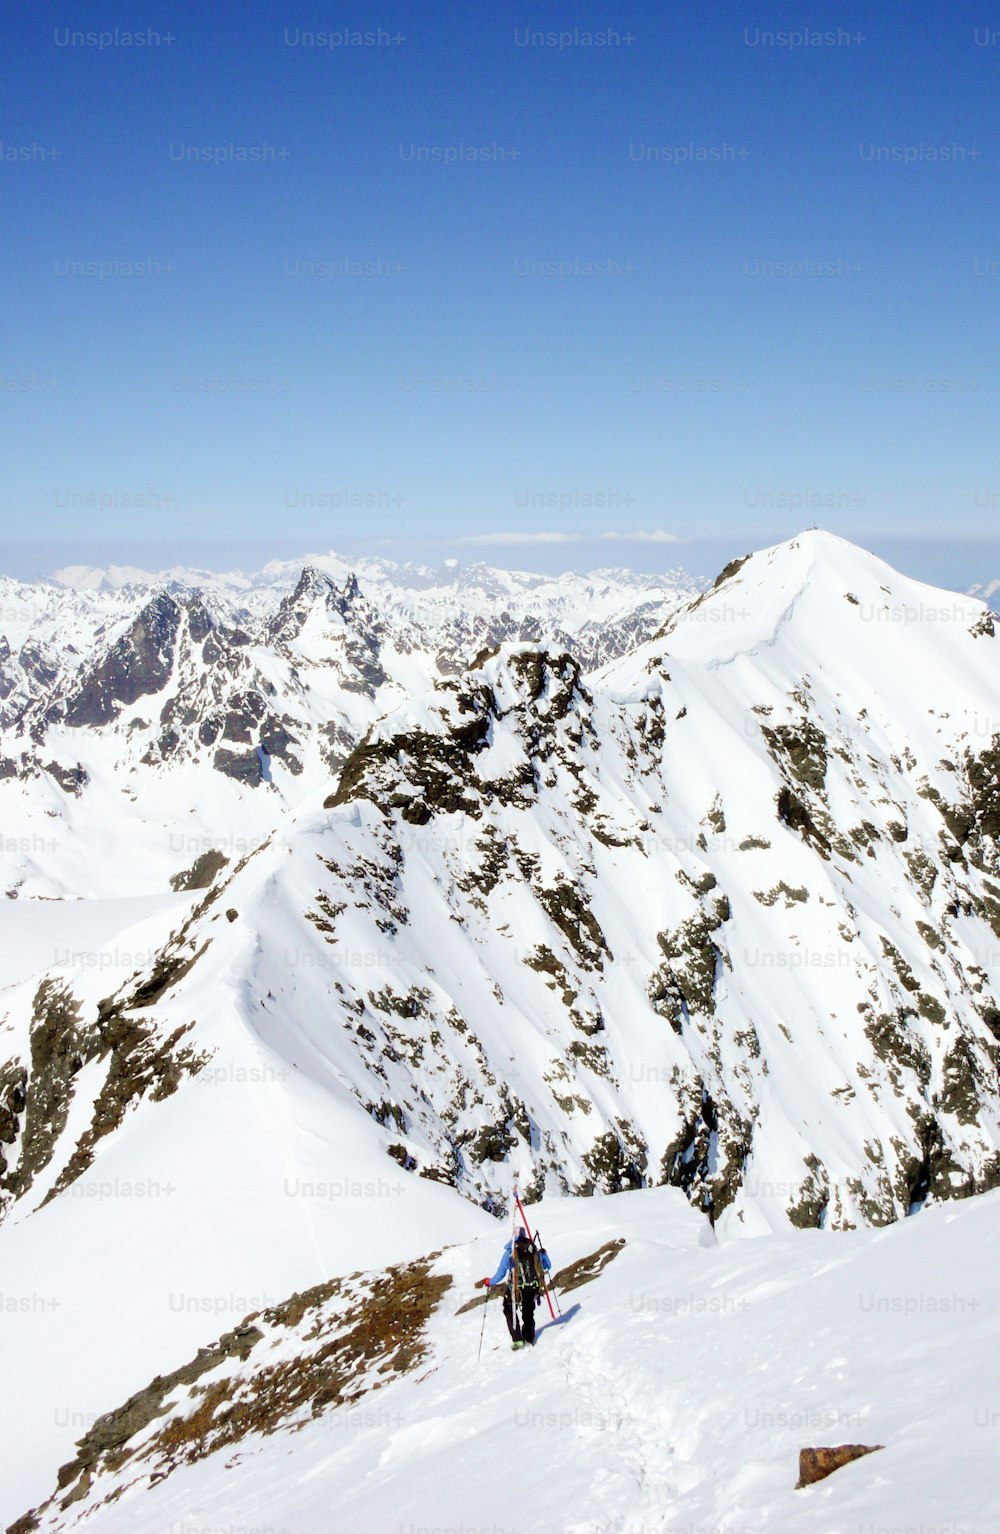 Uno sciatore fuoripista si arrampica e percorre una lunga e stretta cresta di neve nelle Alpi svizzere sulla strada per raggiungere un'alta vetta della catena montuosa del Silvretta.